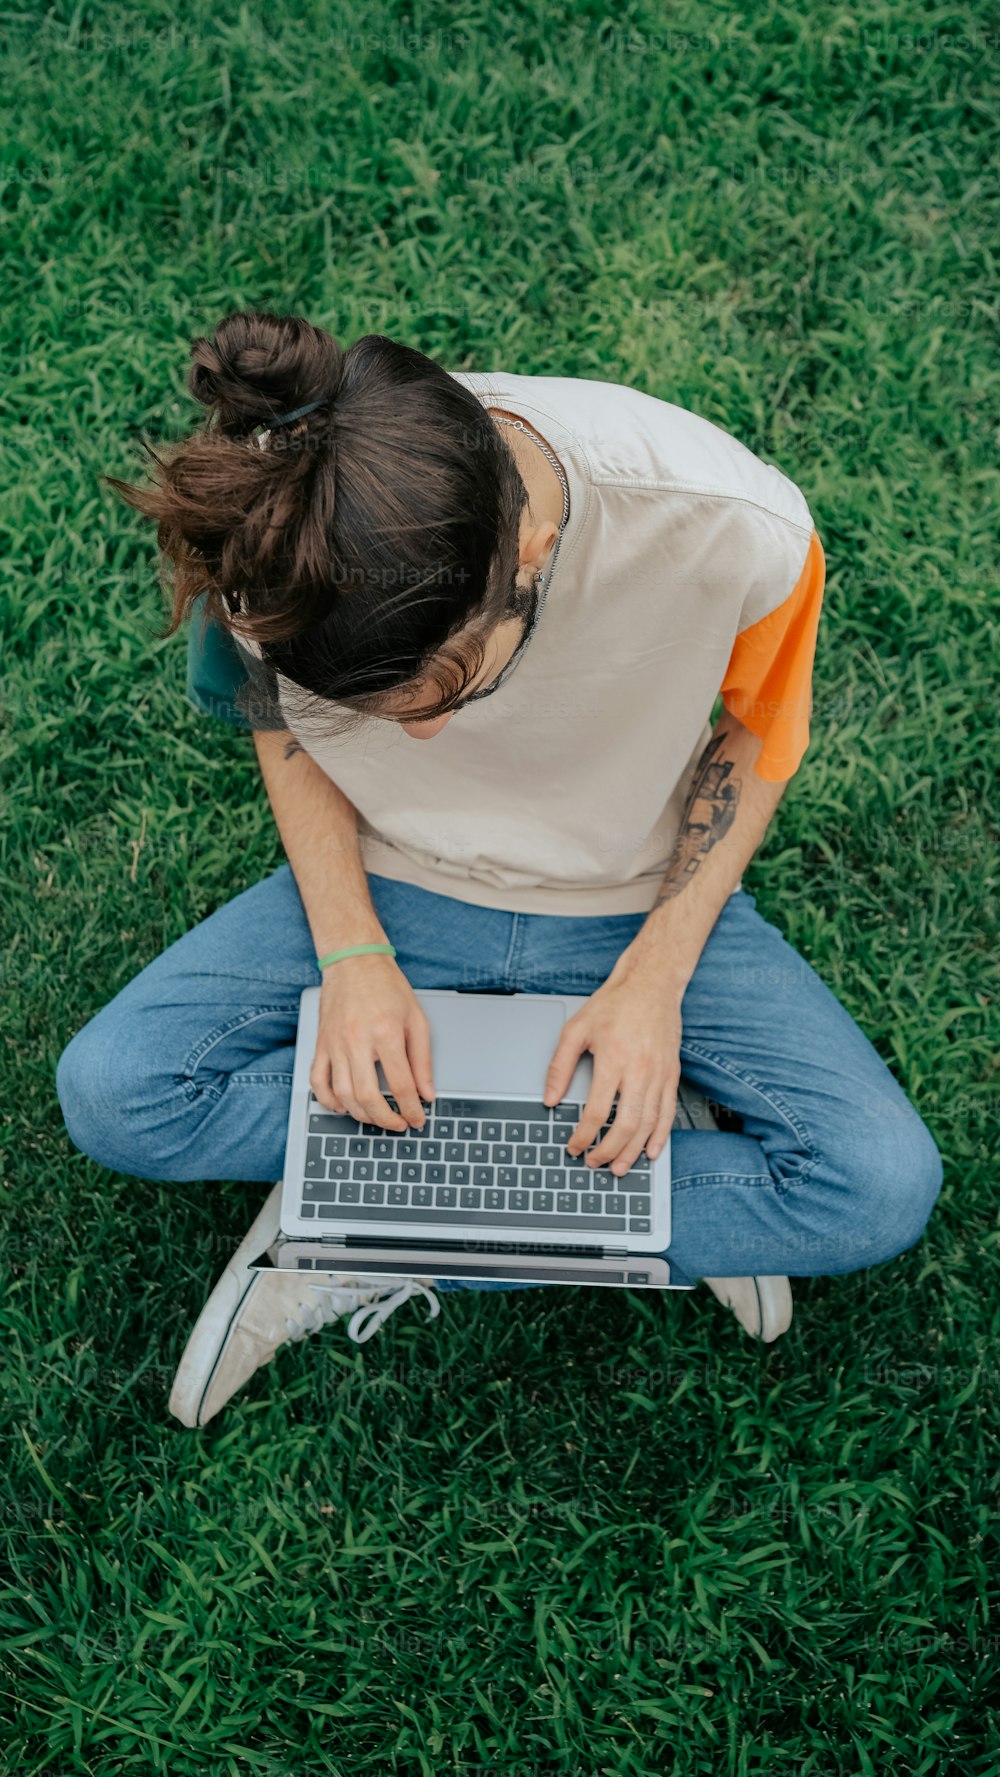 eine Person, die mit einem Laptop im Gras sitzt